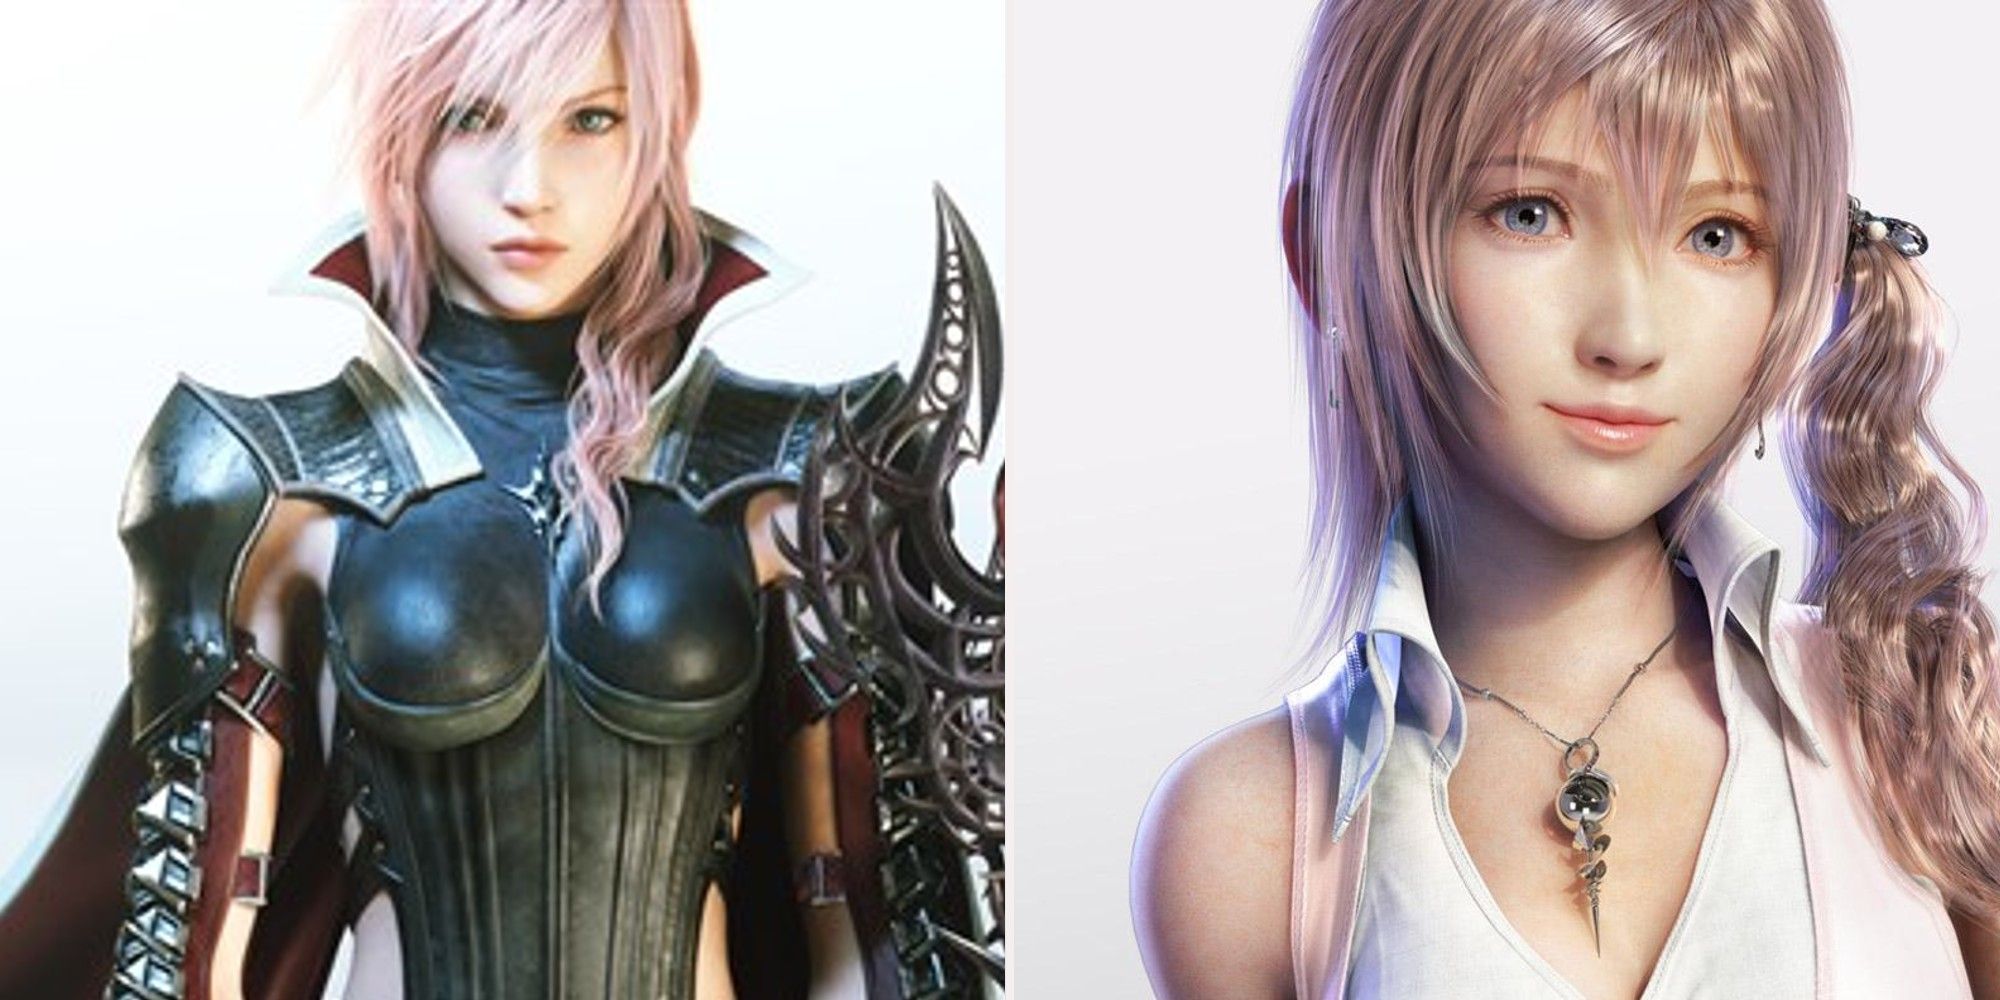 Final Fantasy 13 - Lightning and Serah